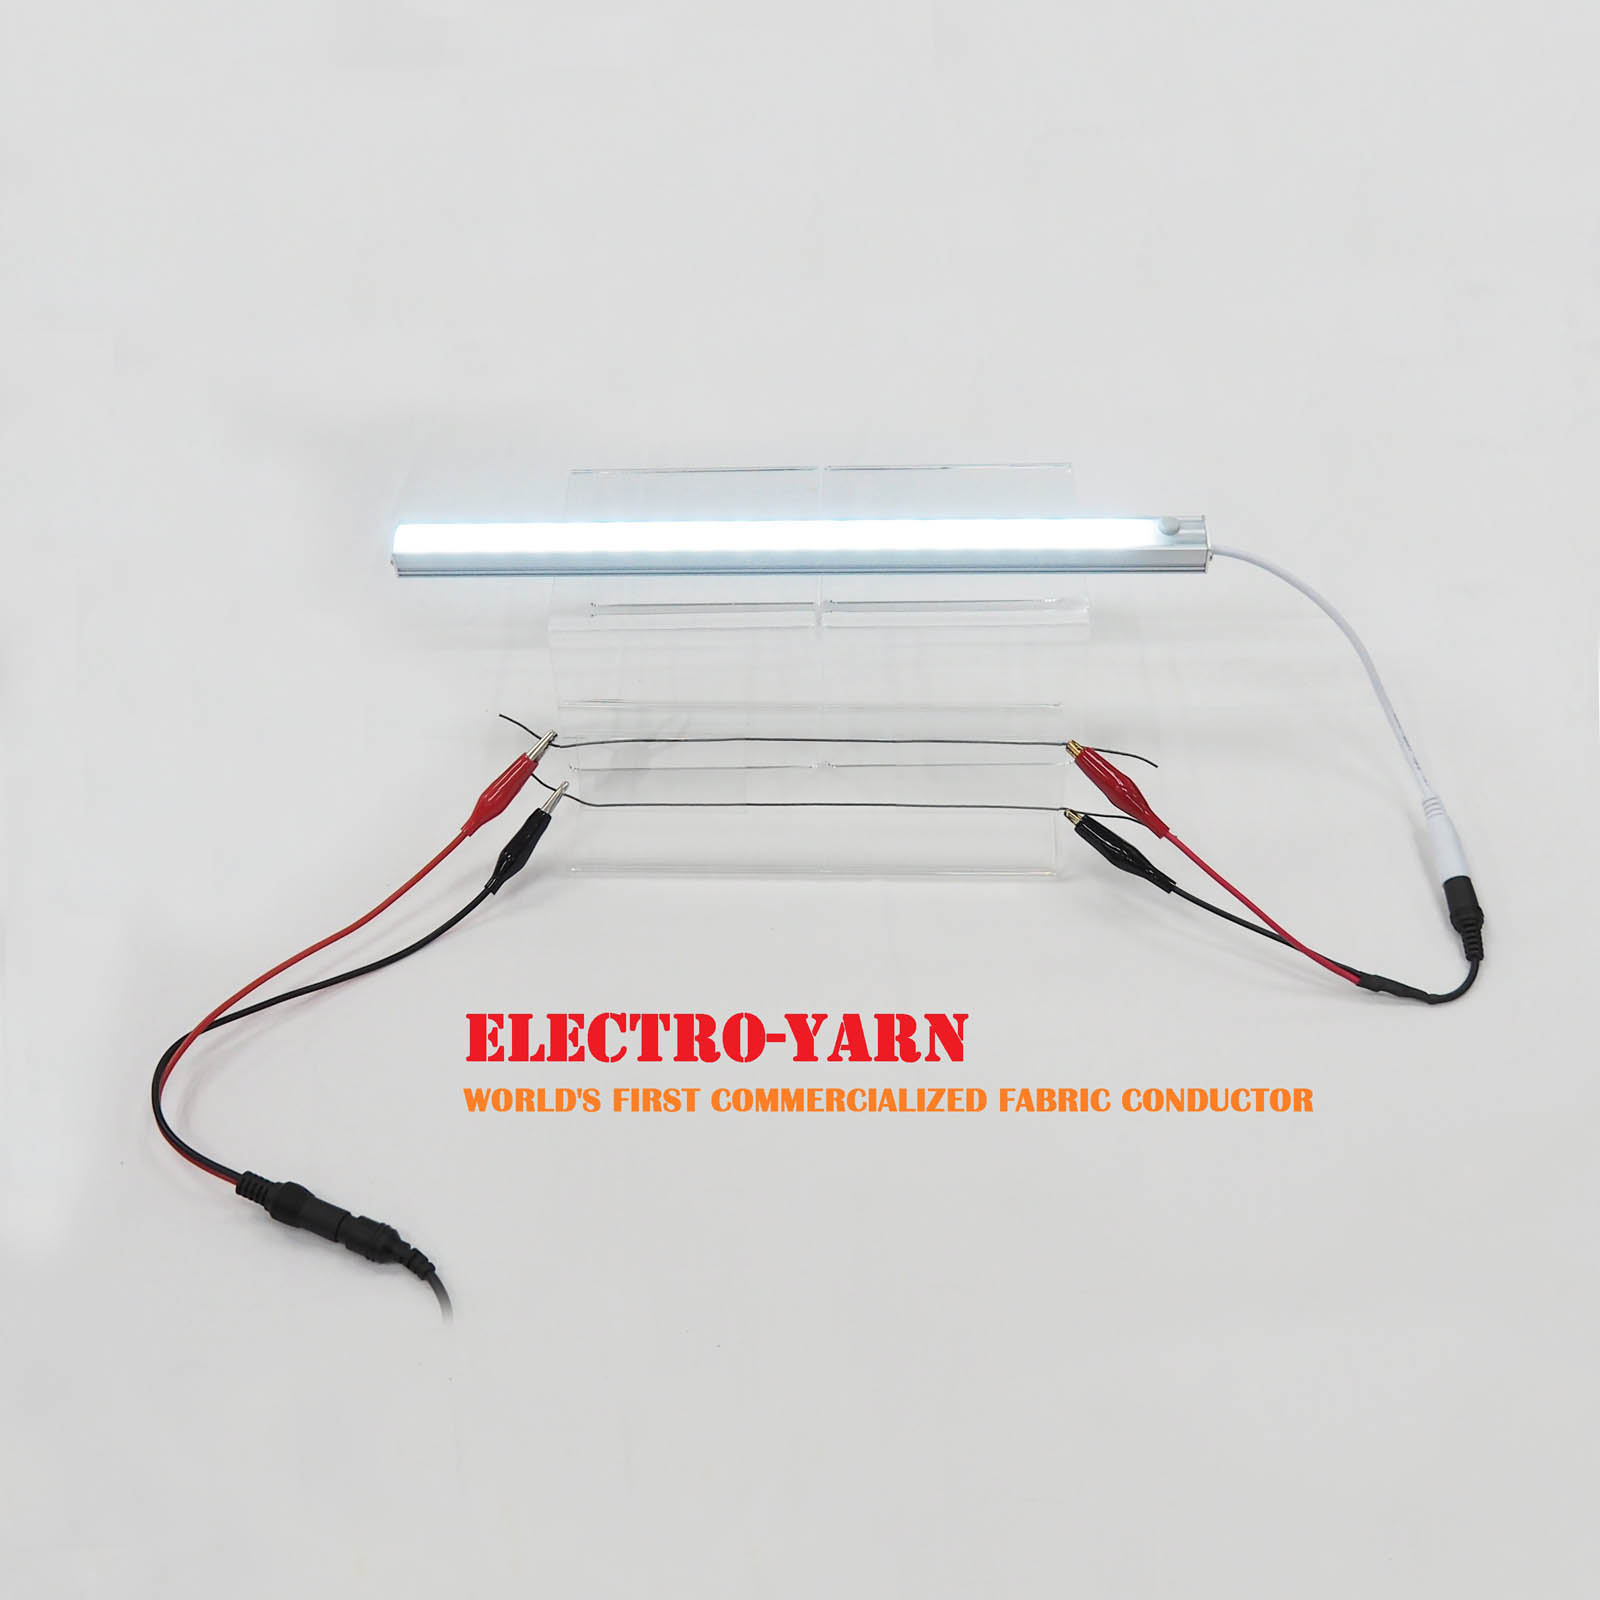 ELECTRO-YARN Image